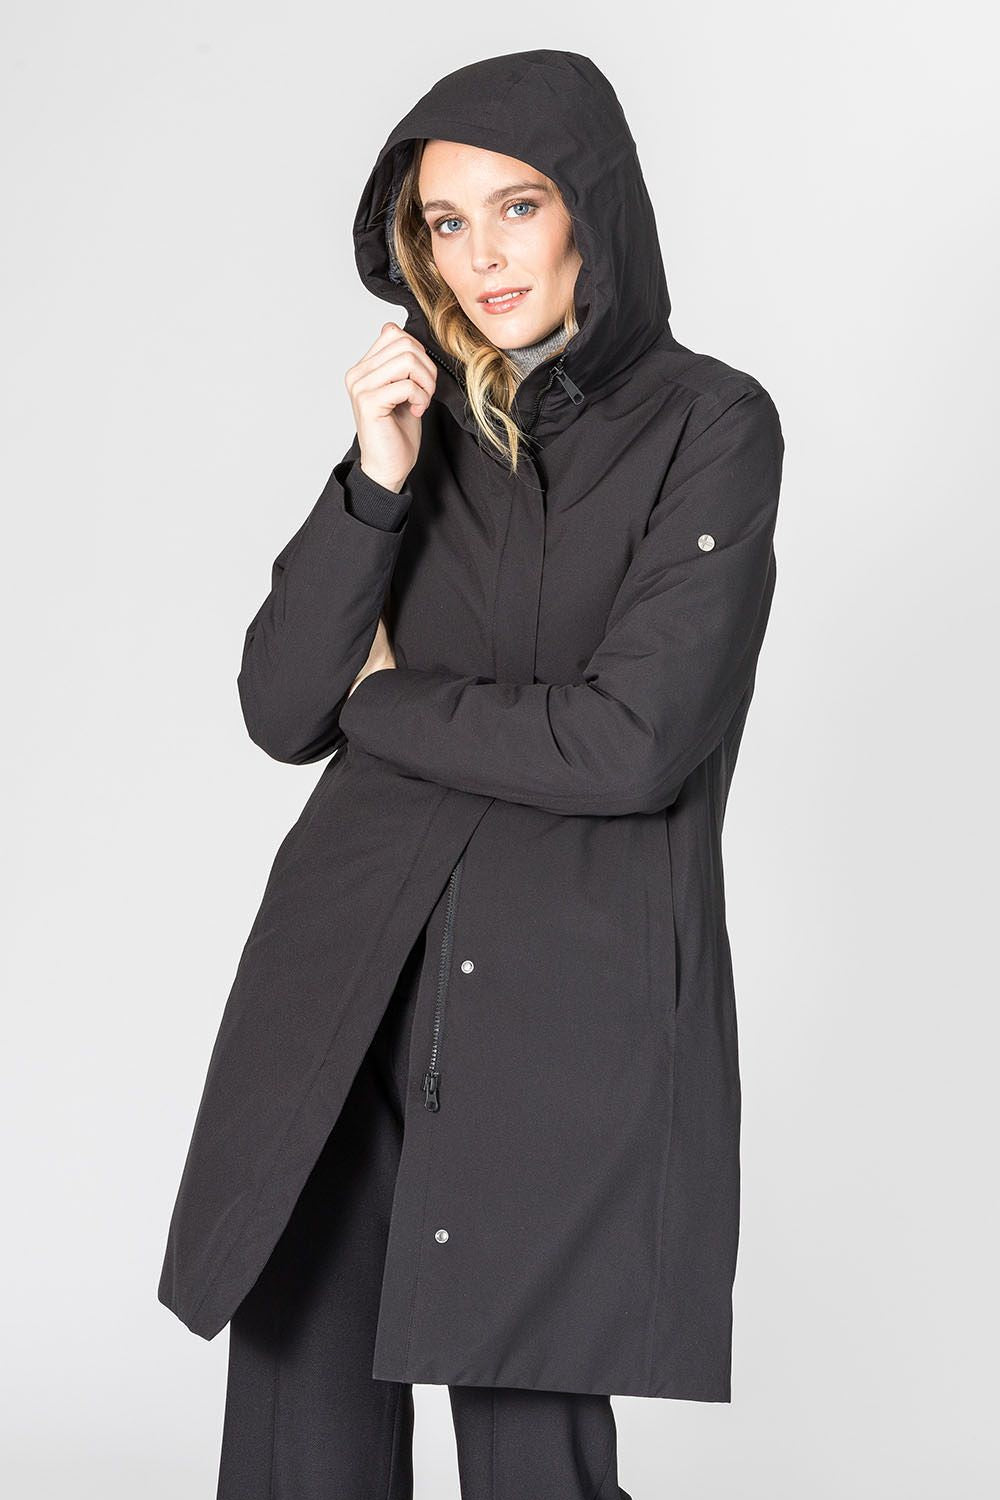 Women Coat - Black - Scandinavian Edition - Jakker - VILLOID.no